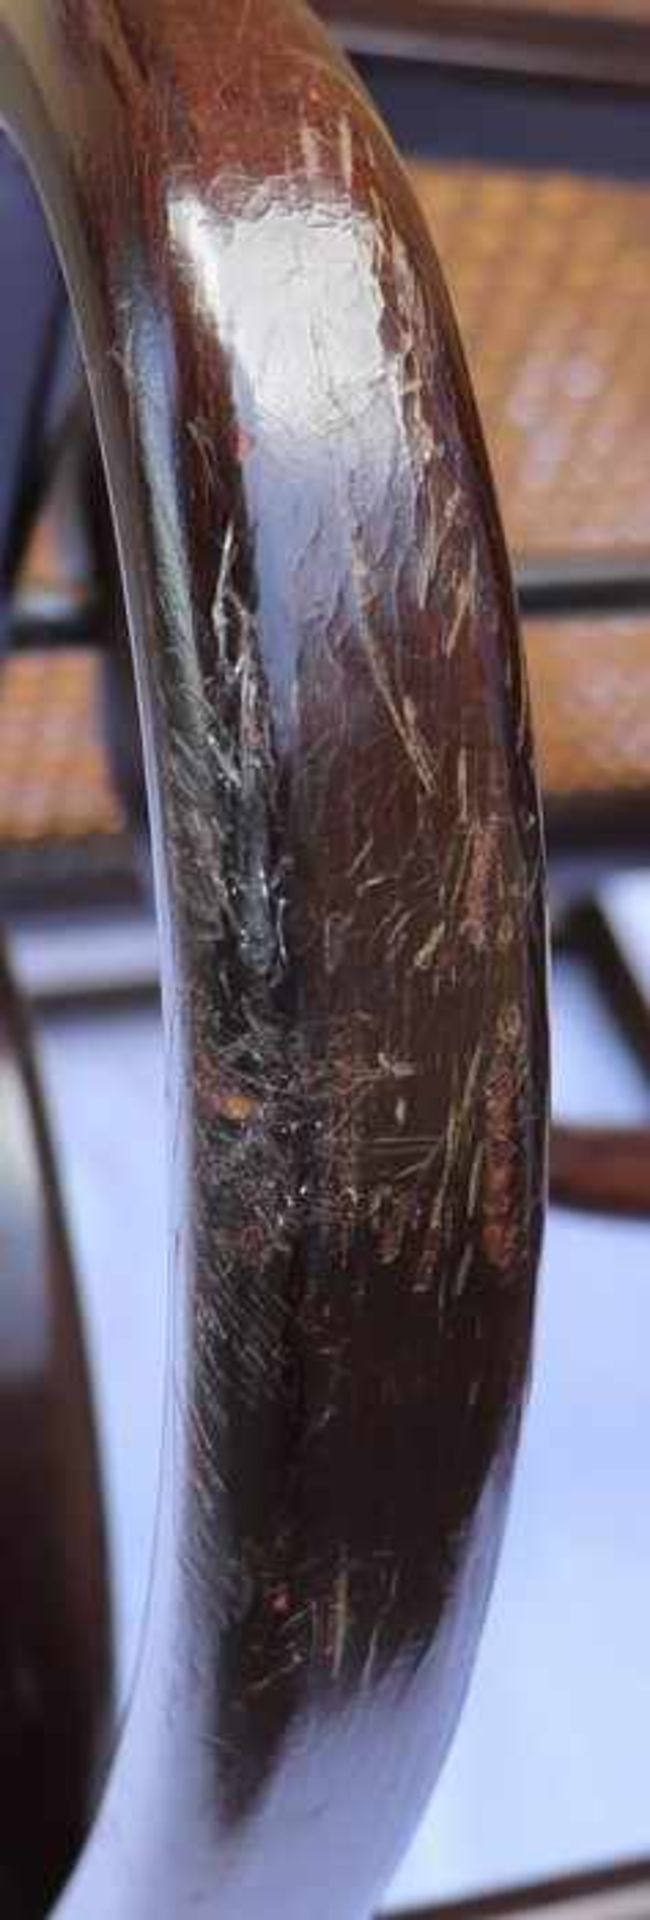 Trachtenkorb19. Jh., Franken, Weide mit Lederapplikationen, tlw. eingefärbt, halbrunde Form mit - Bild 7 aus 18